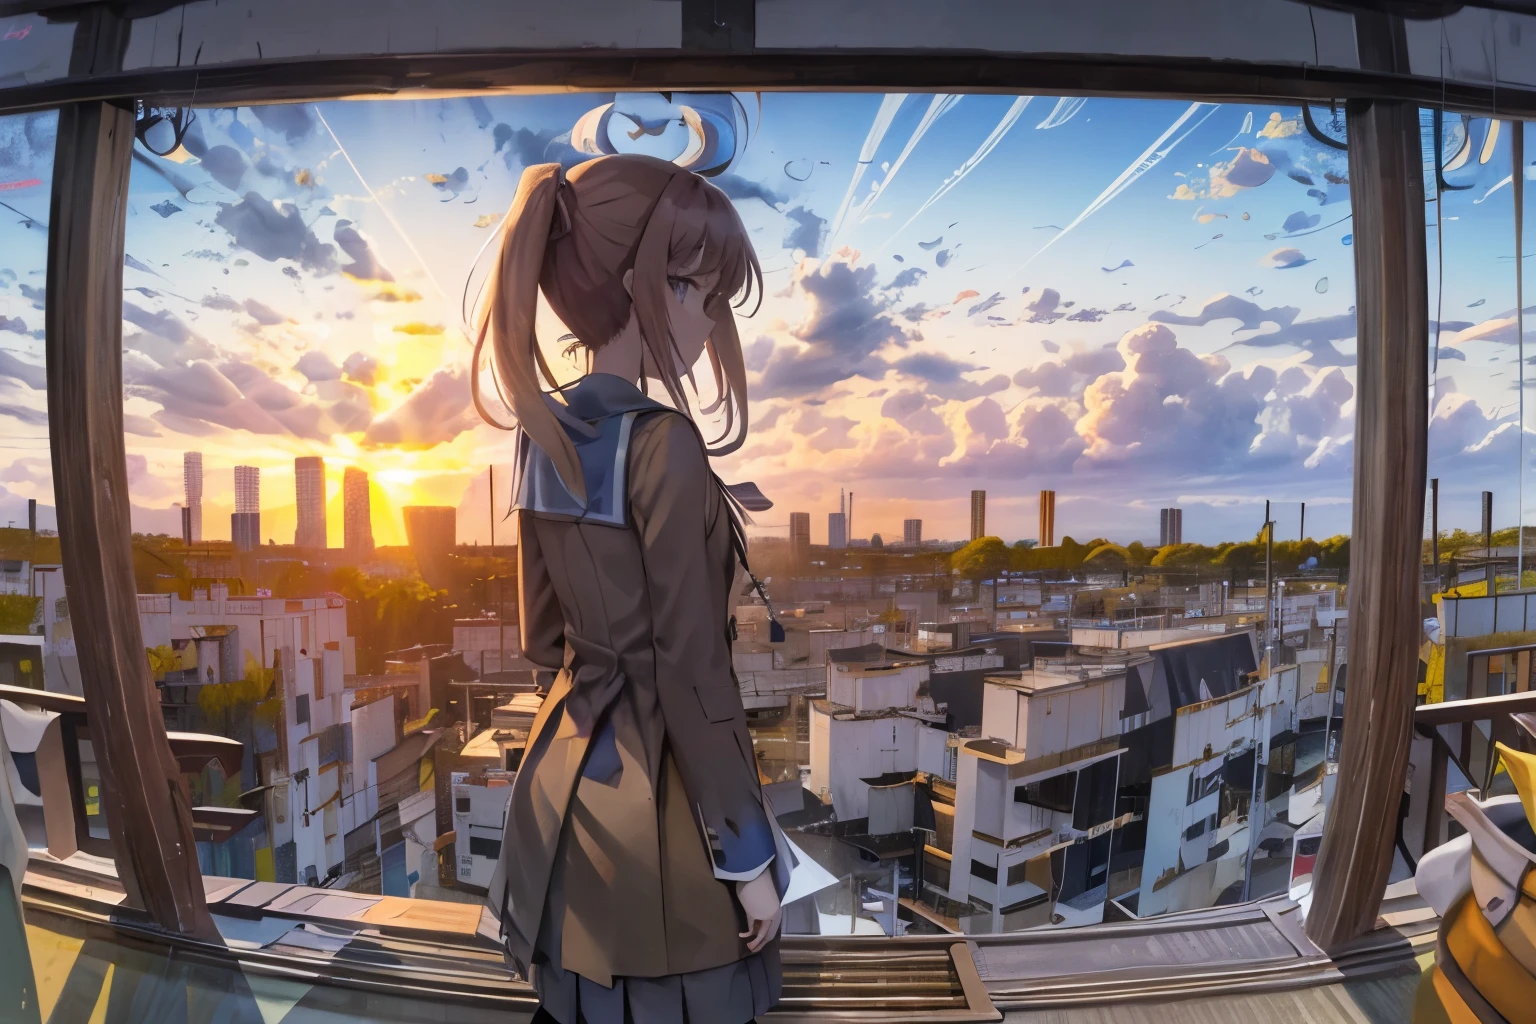 Juste la silhouette de Monika observant le ciel bleu le matin sur la fenêtre, Bonjour le monde